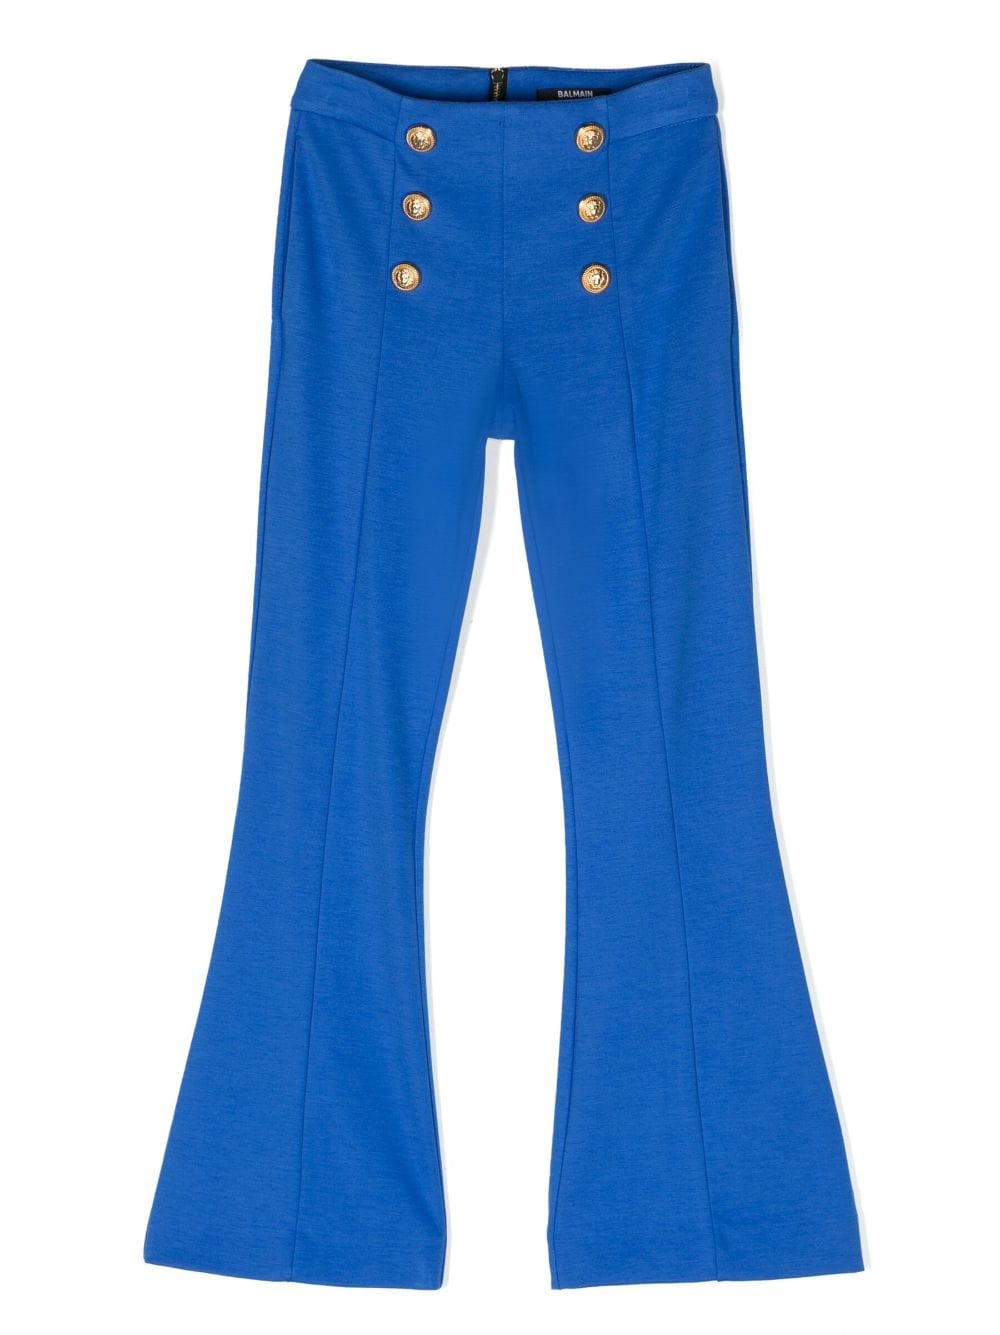 Pantaloni blu bambina